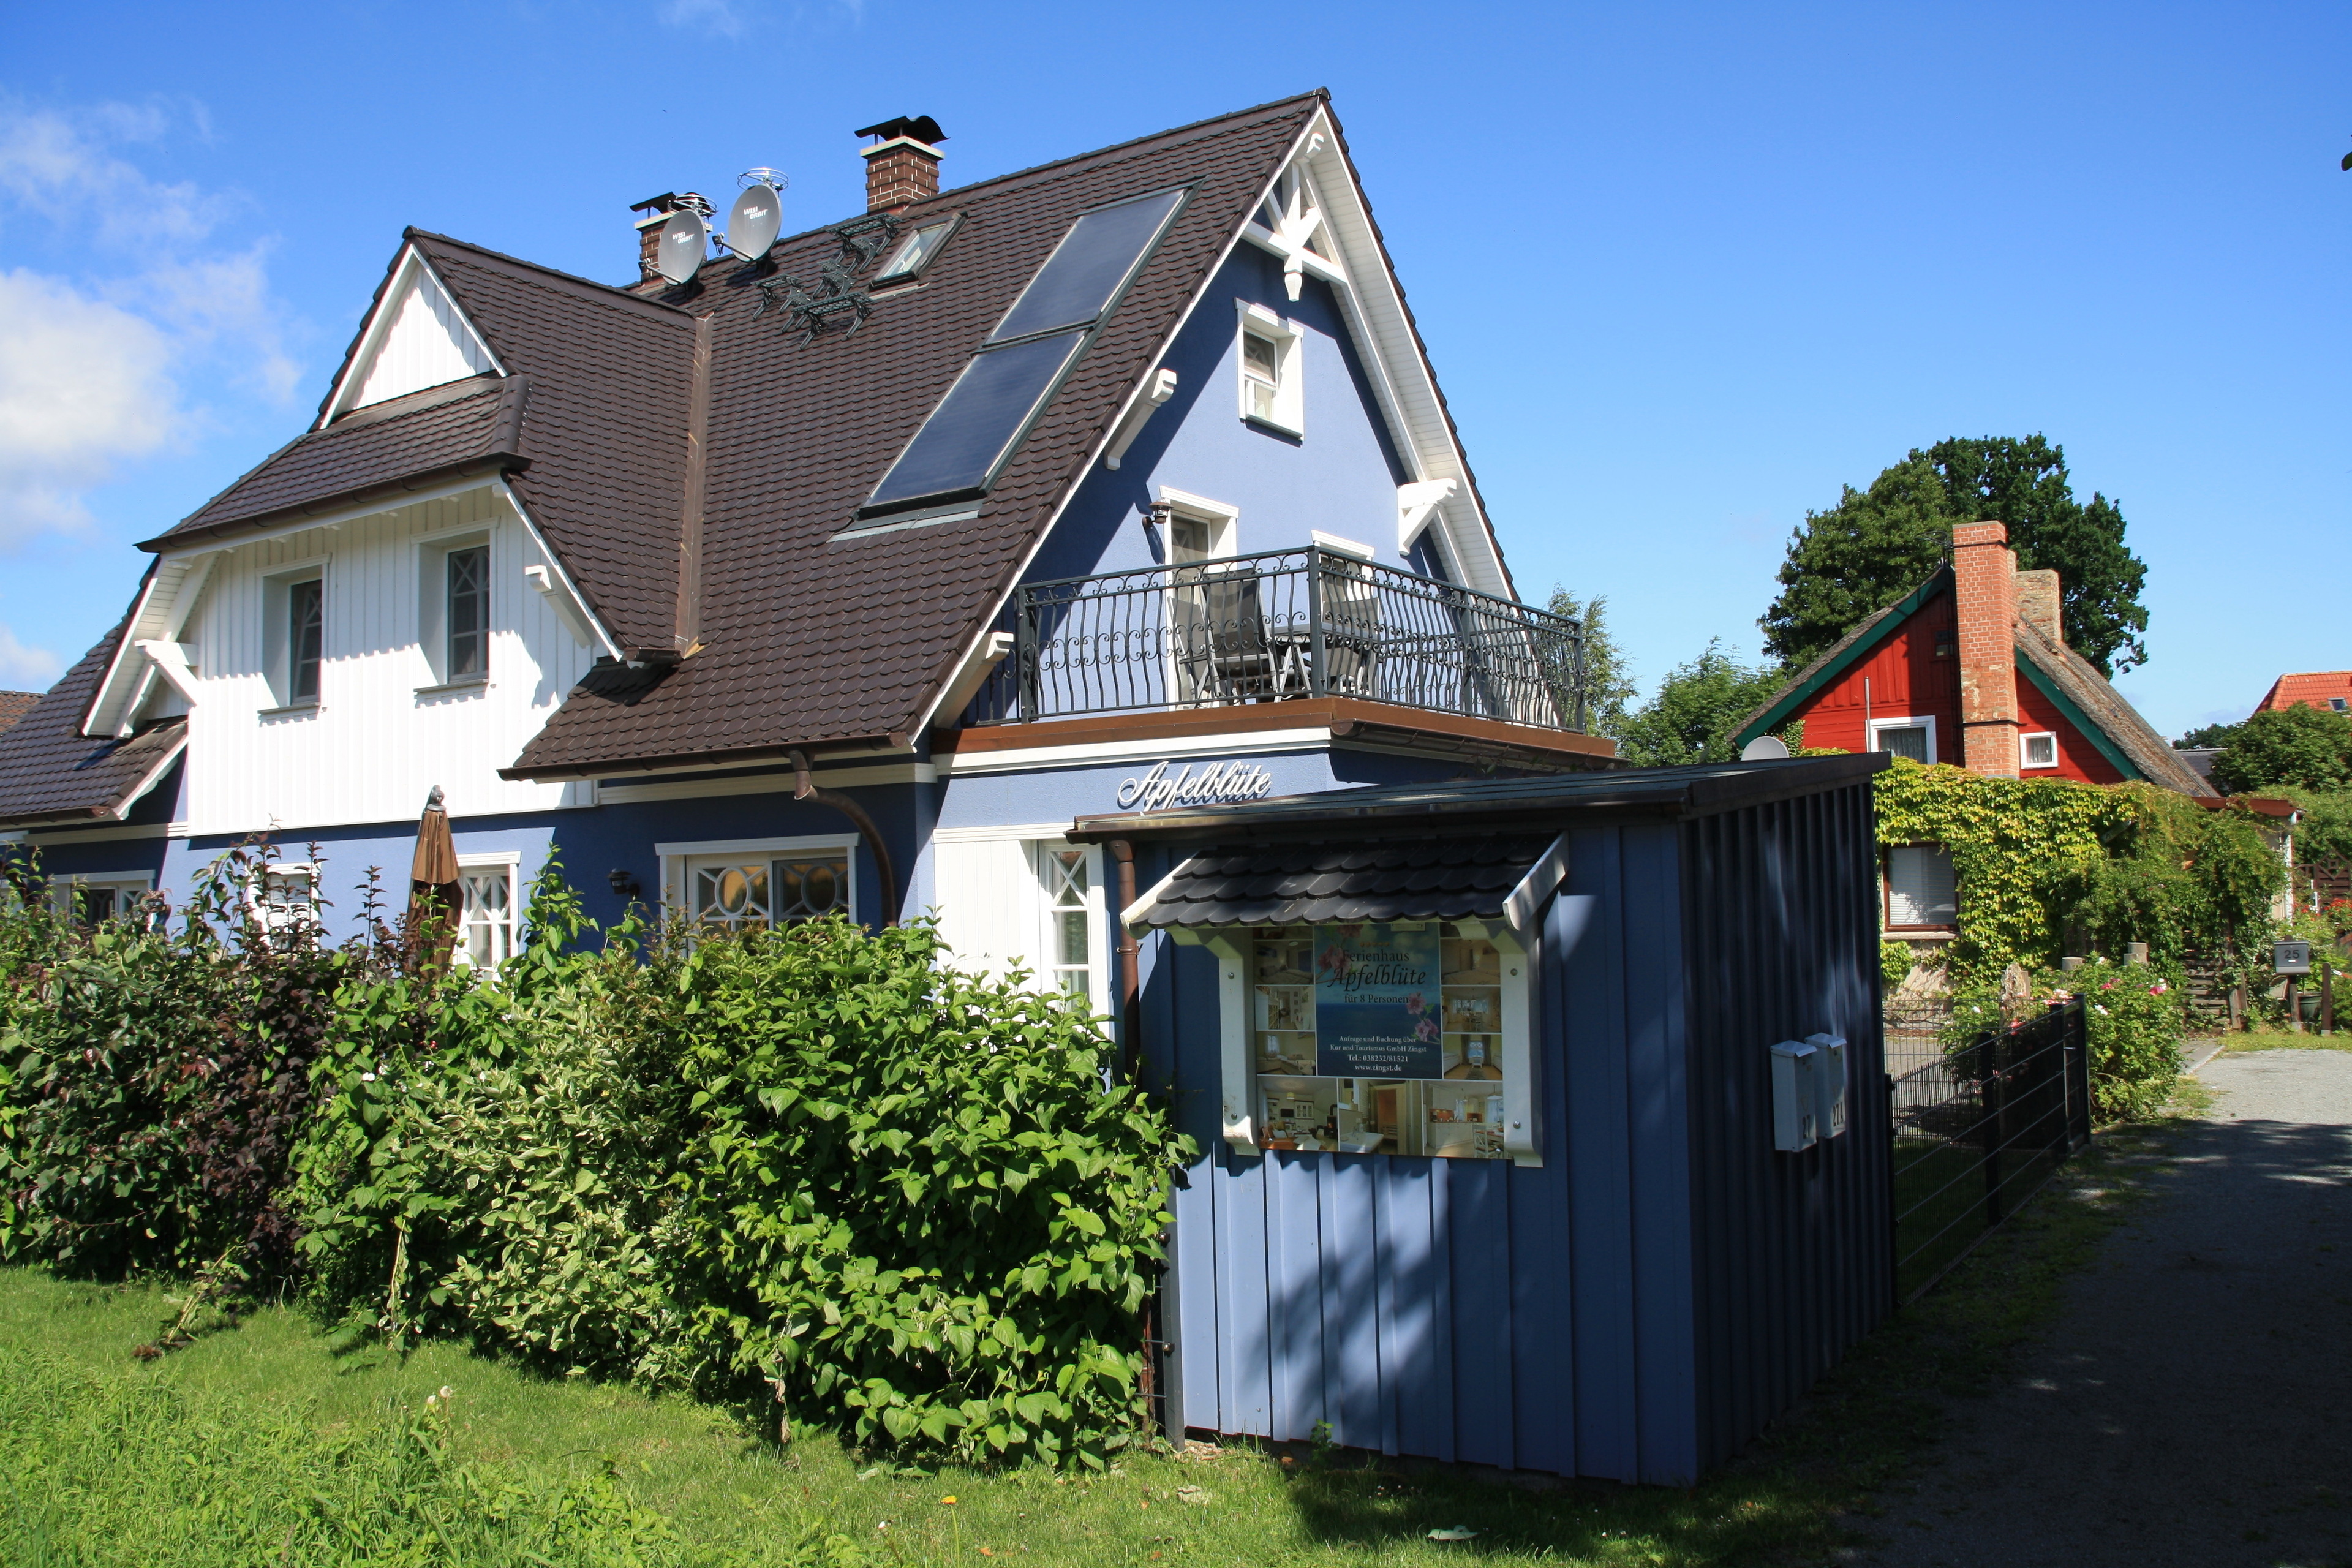 Ferienhaus Apfelblüte Ferienhaus in Mecklenburg Vorpommern